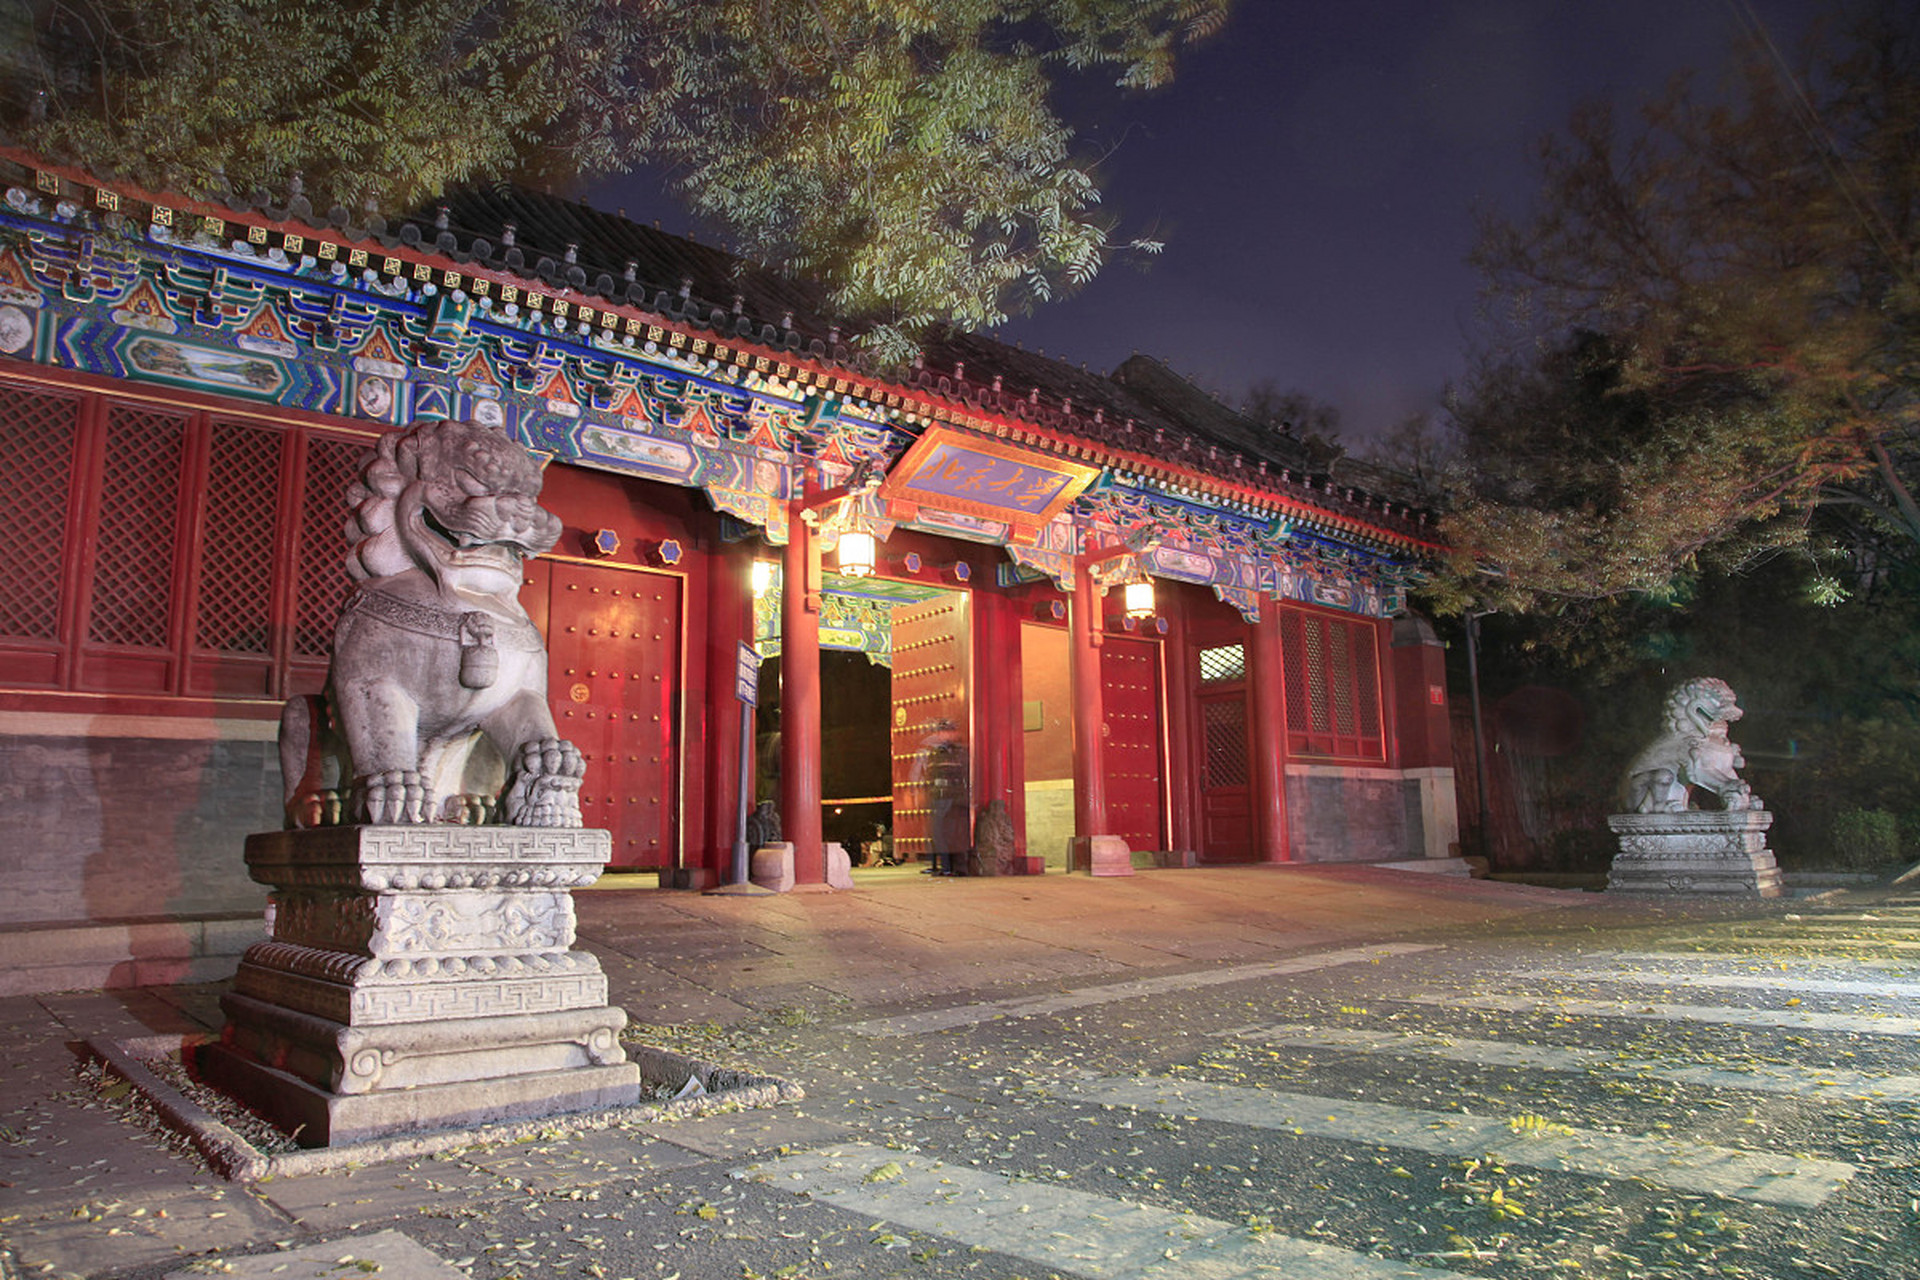 北京慈善寺位于石景山区天台山,是一座历史悠久的寺院,建于明朝万历